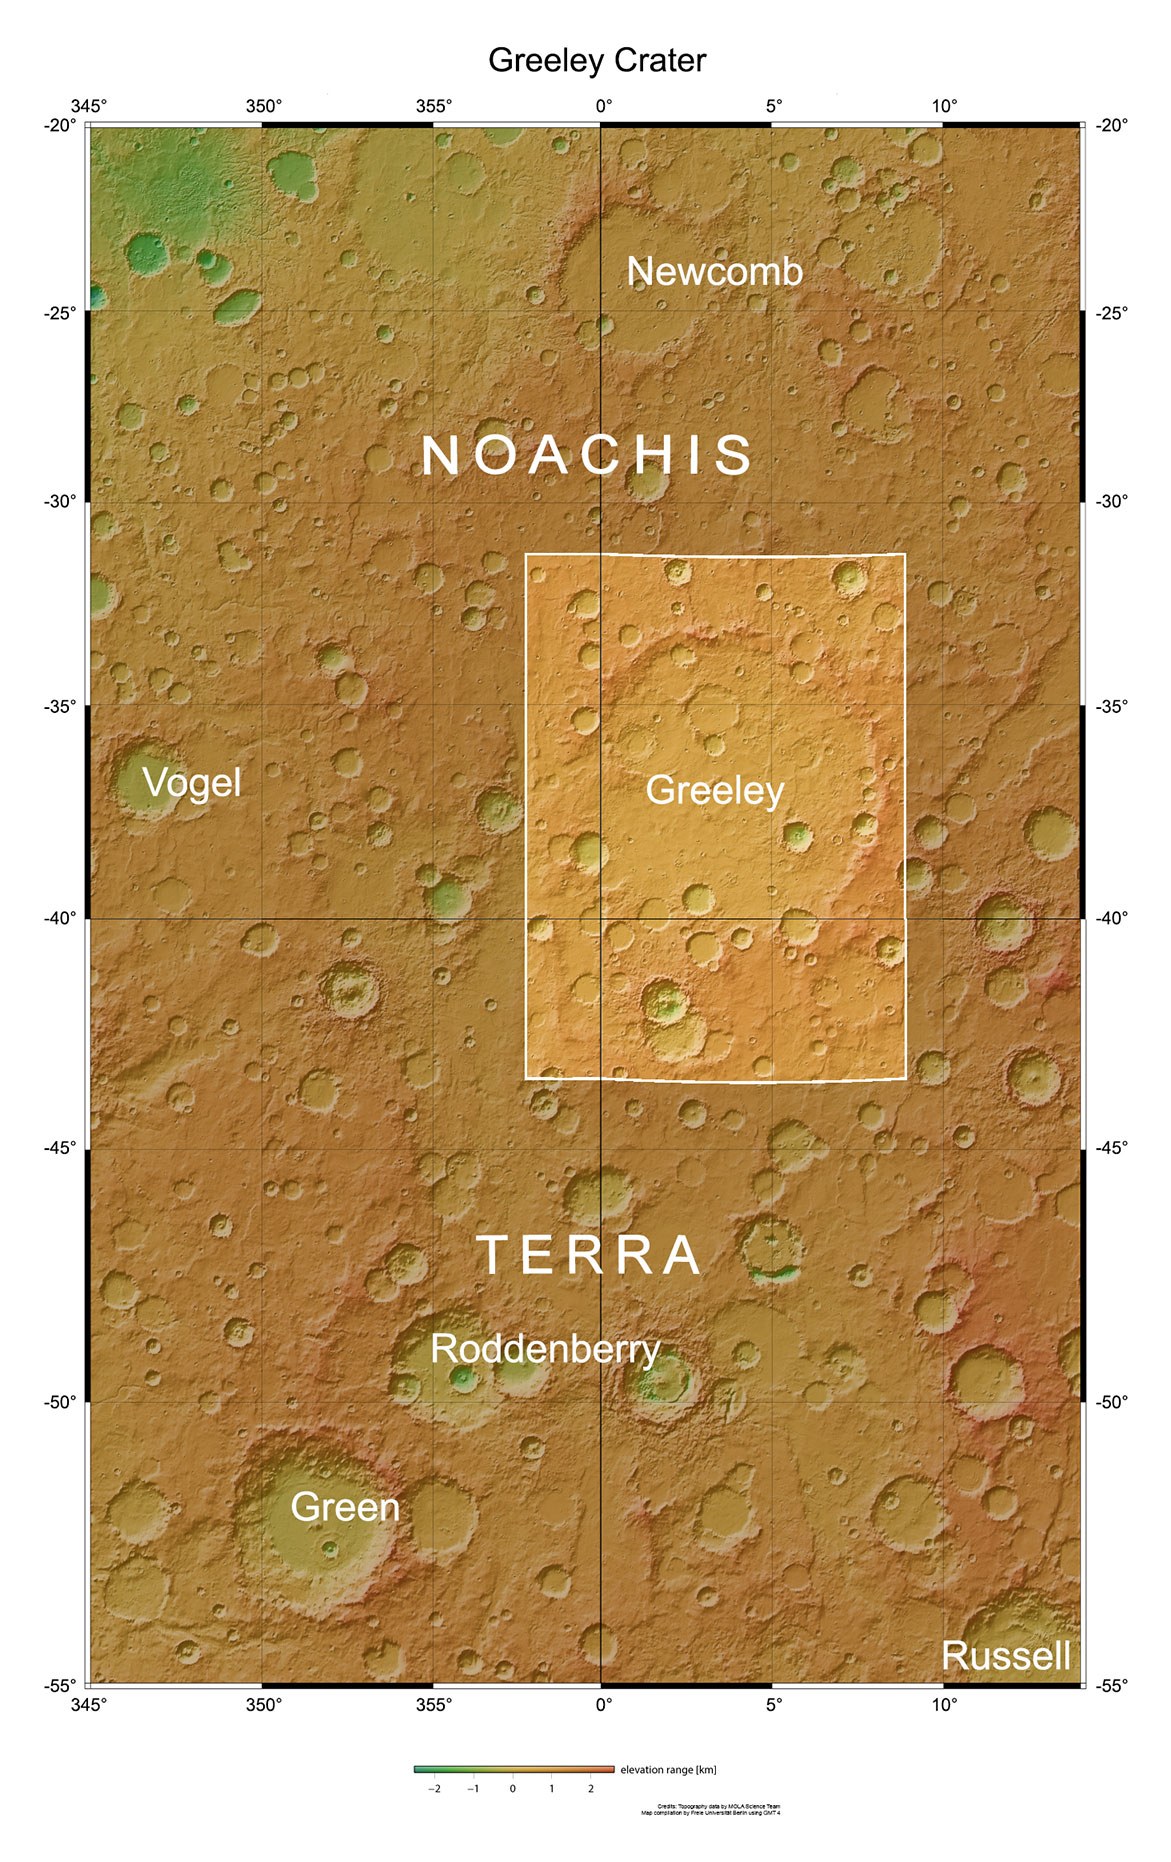 Der Einschlagskrater Greeley in der Region Noachis Terra.